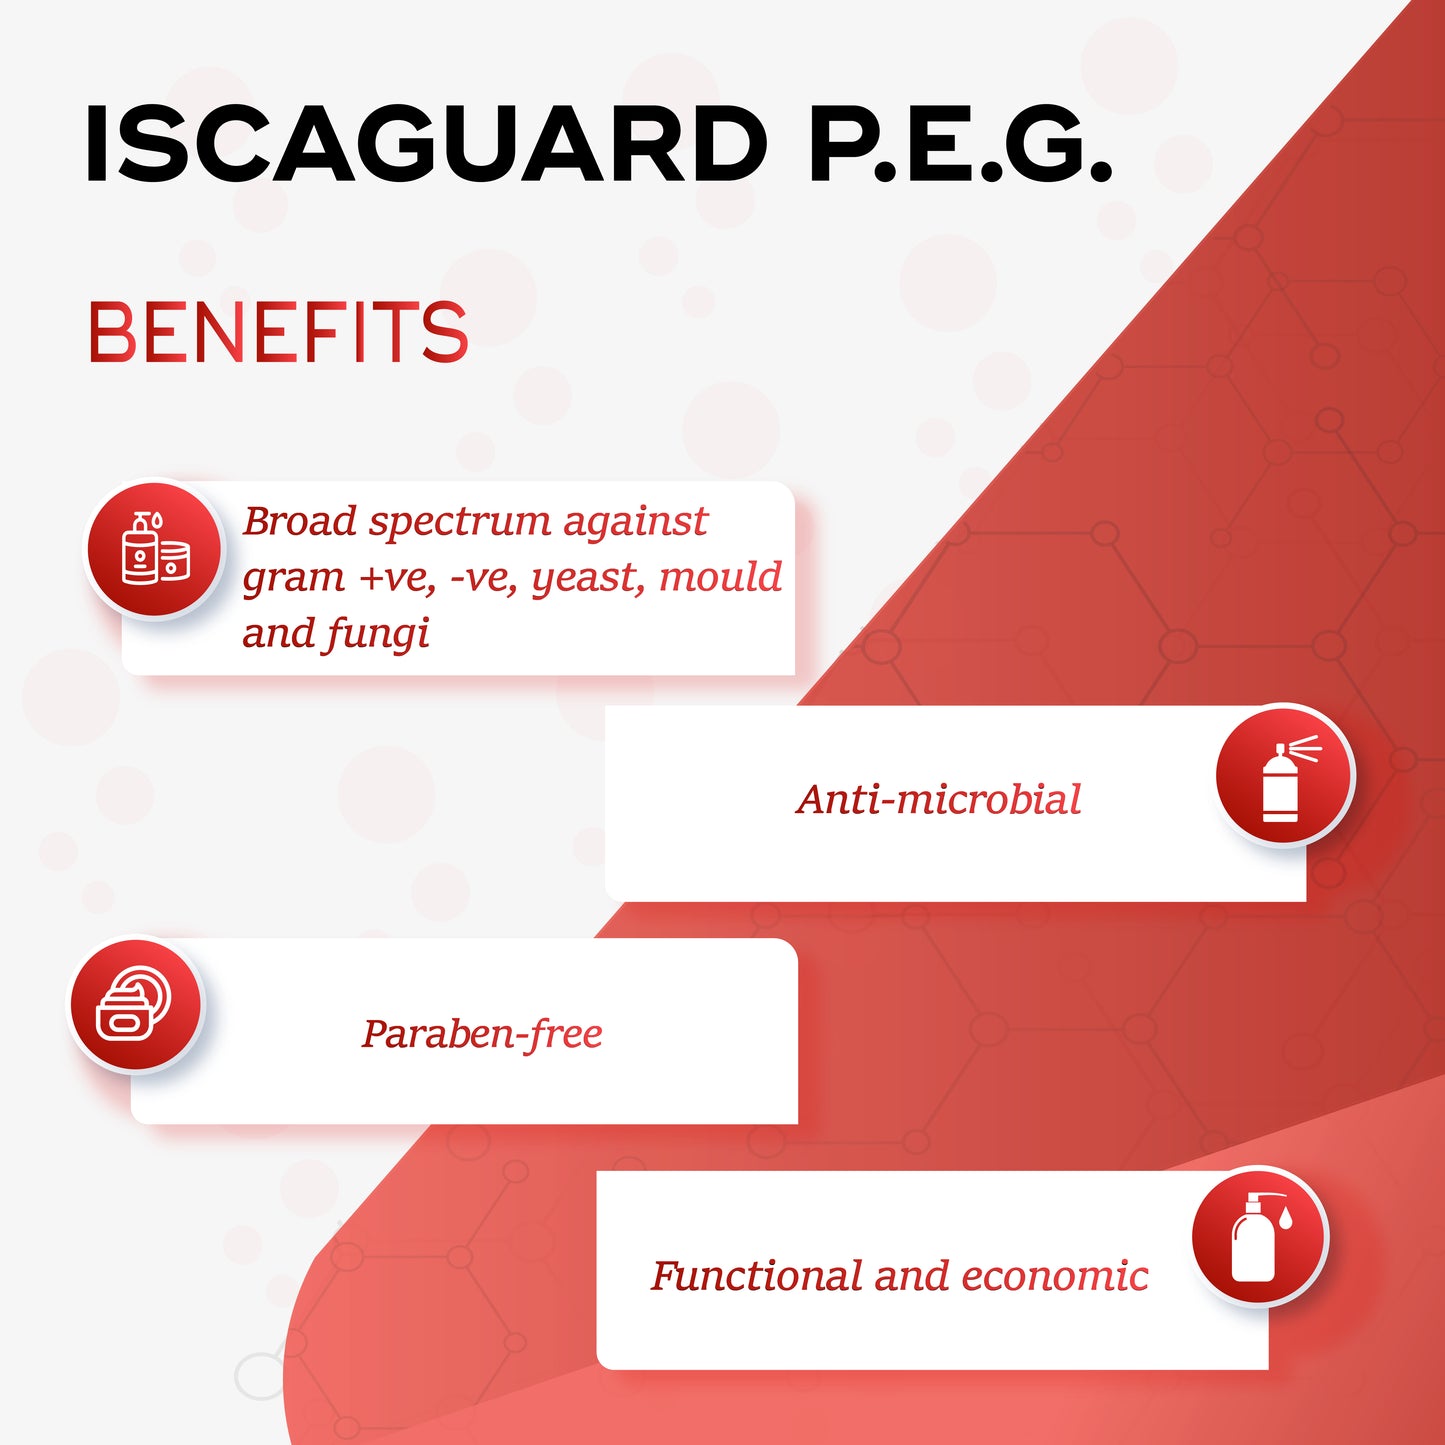 Iscaguard PEG